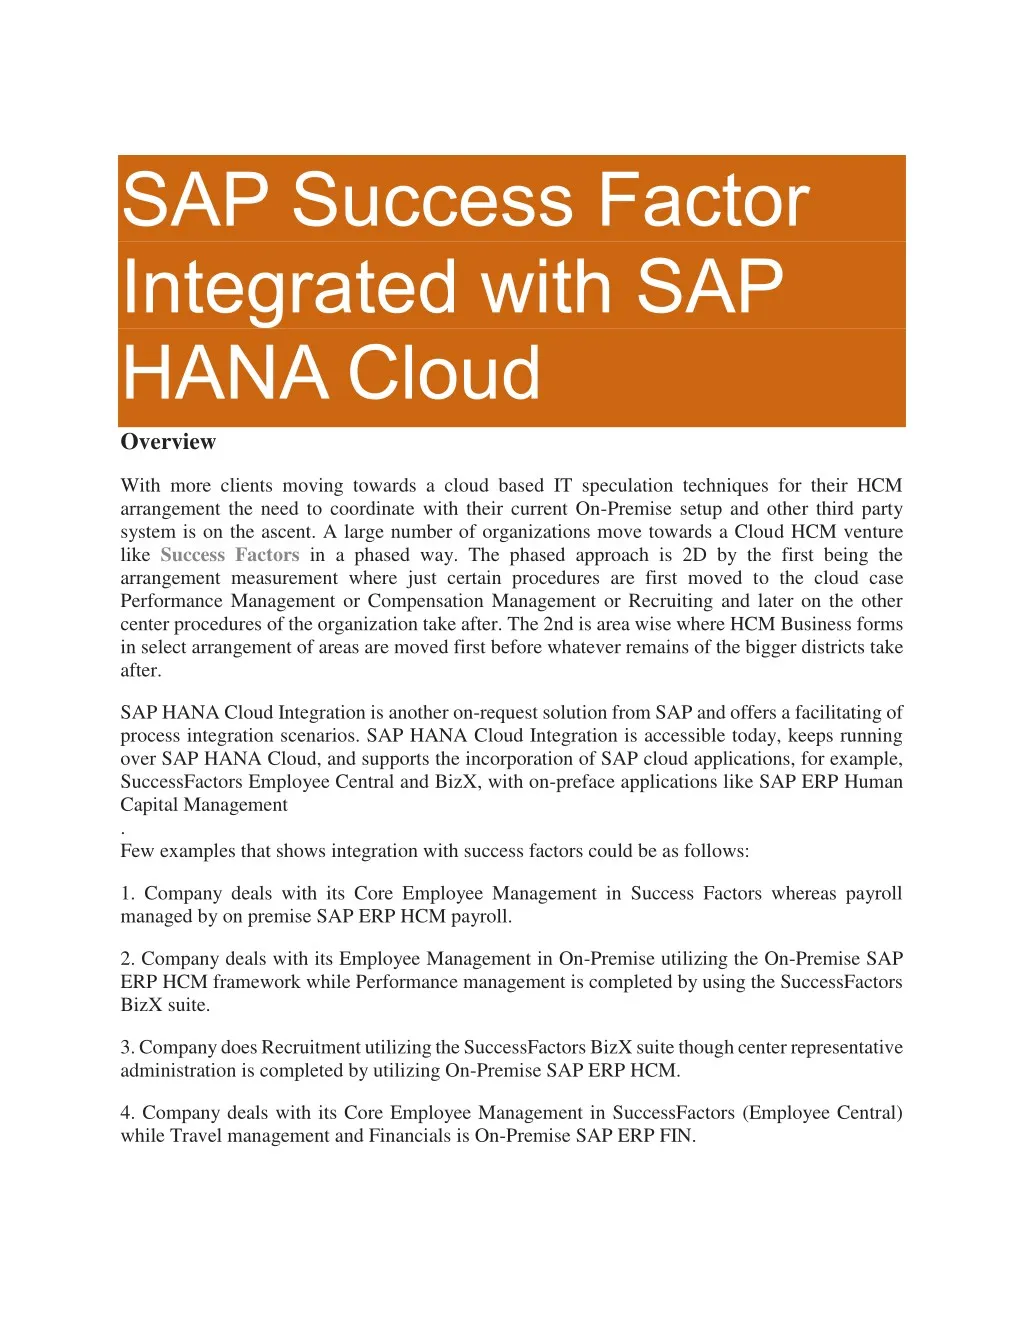 sap success factor integrated with sap hana cloud